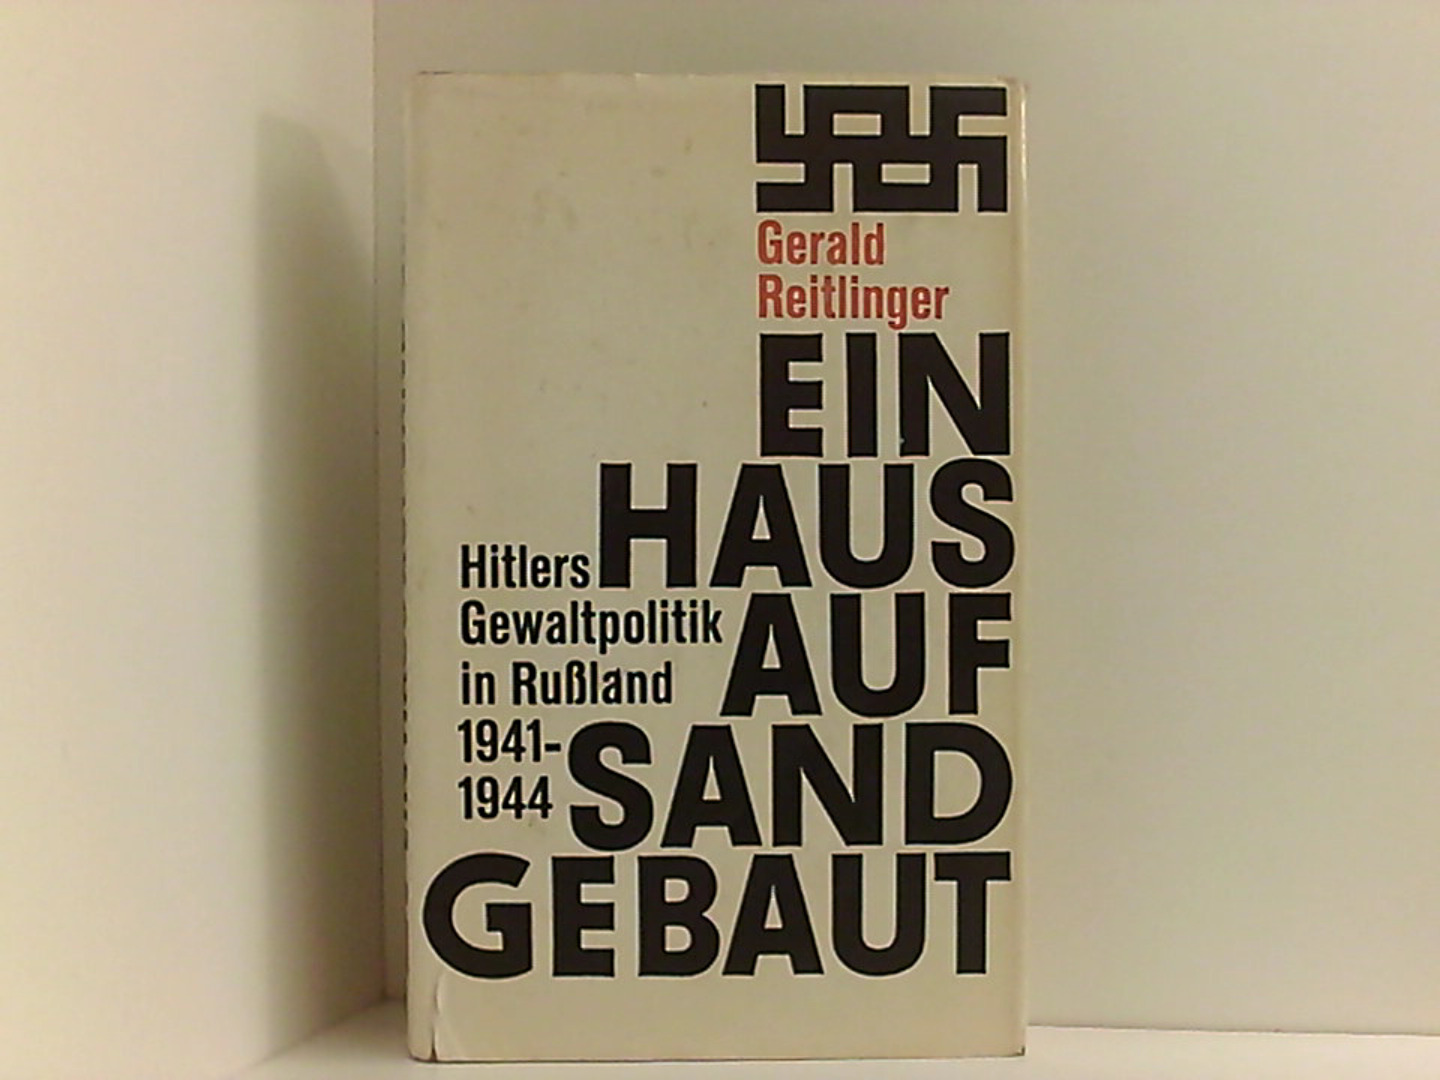 Ein Haus auf Sand gebaut: Hitlers Gewaltpolitk in Rußland 1941-1944 - Reitlinger Gerald und Heinrich, Bodensieck